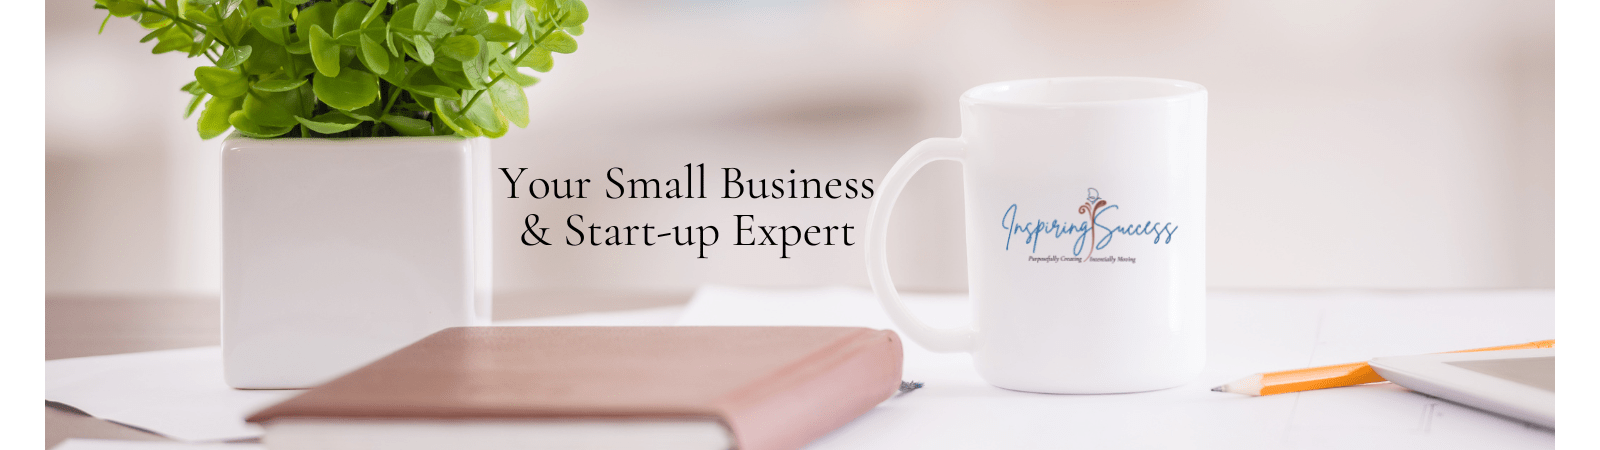 Inspiring Success | Karen Kleinwort Your Small Business & Start-Up Expert